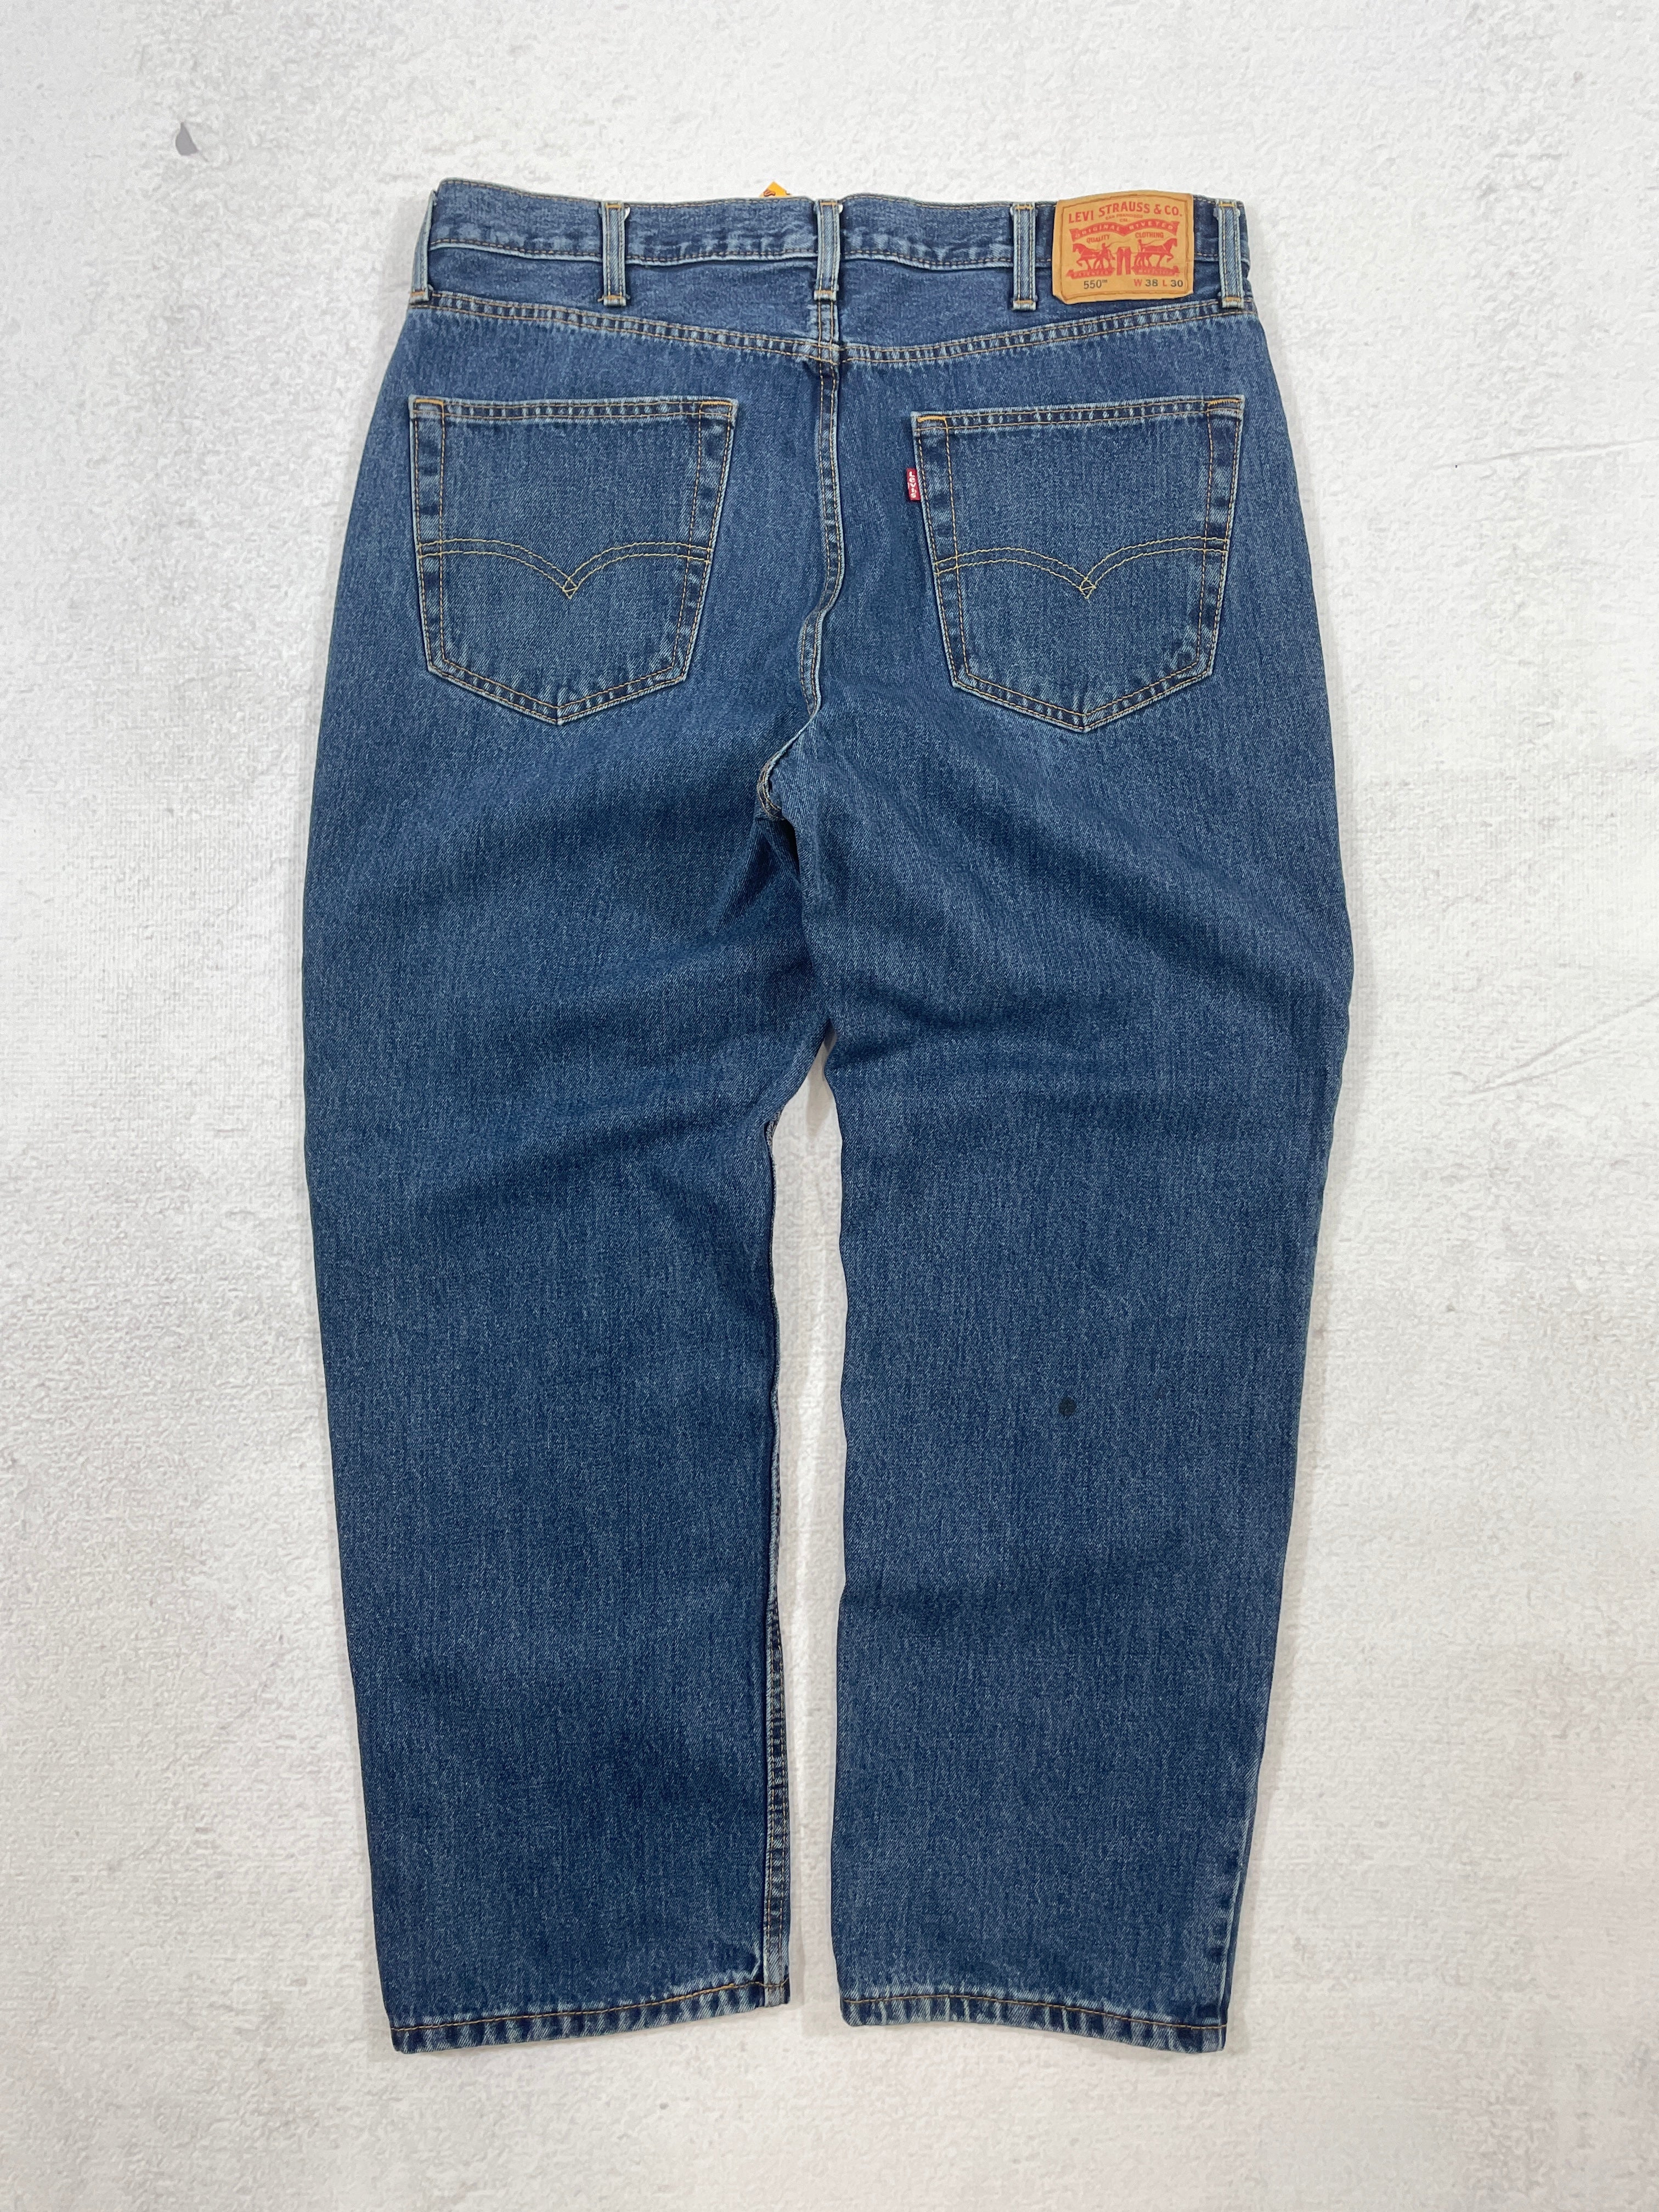 Vintage Levis 550 Jeans - Men's 38WX30L